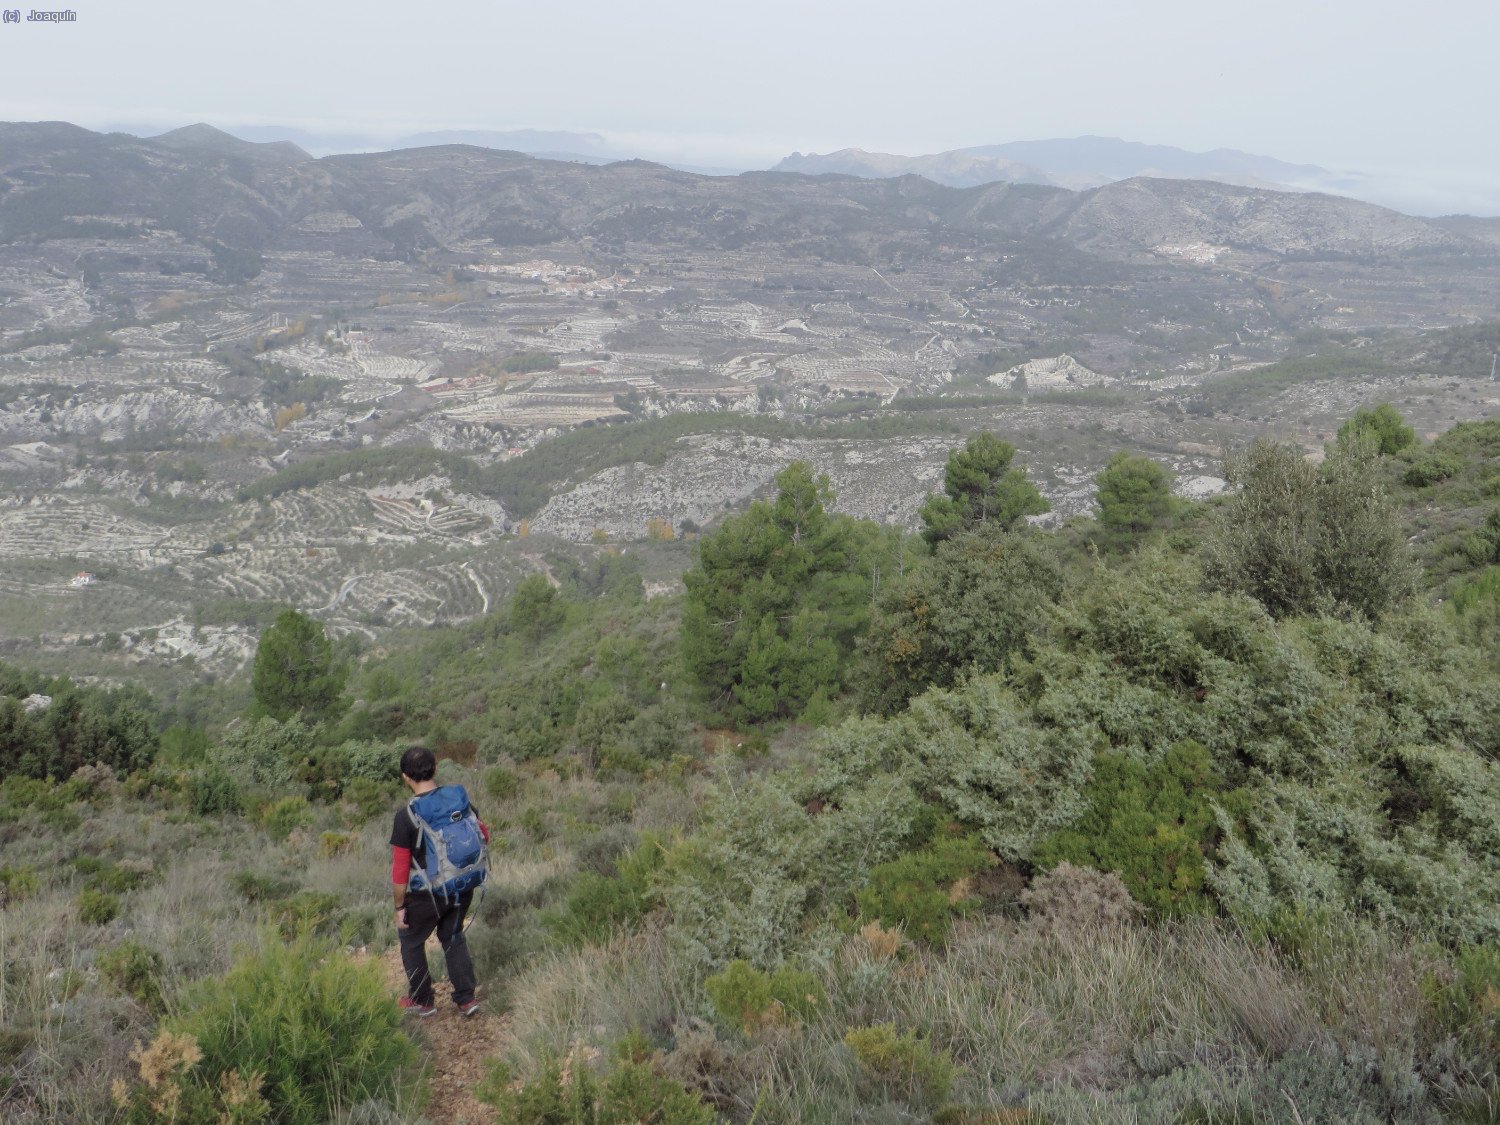 Senda de camino a Fageca, vistas hacía la Vall de Seta y Sierra de l